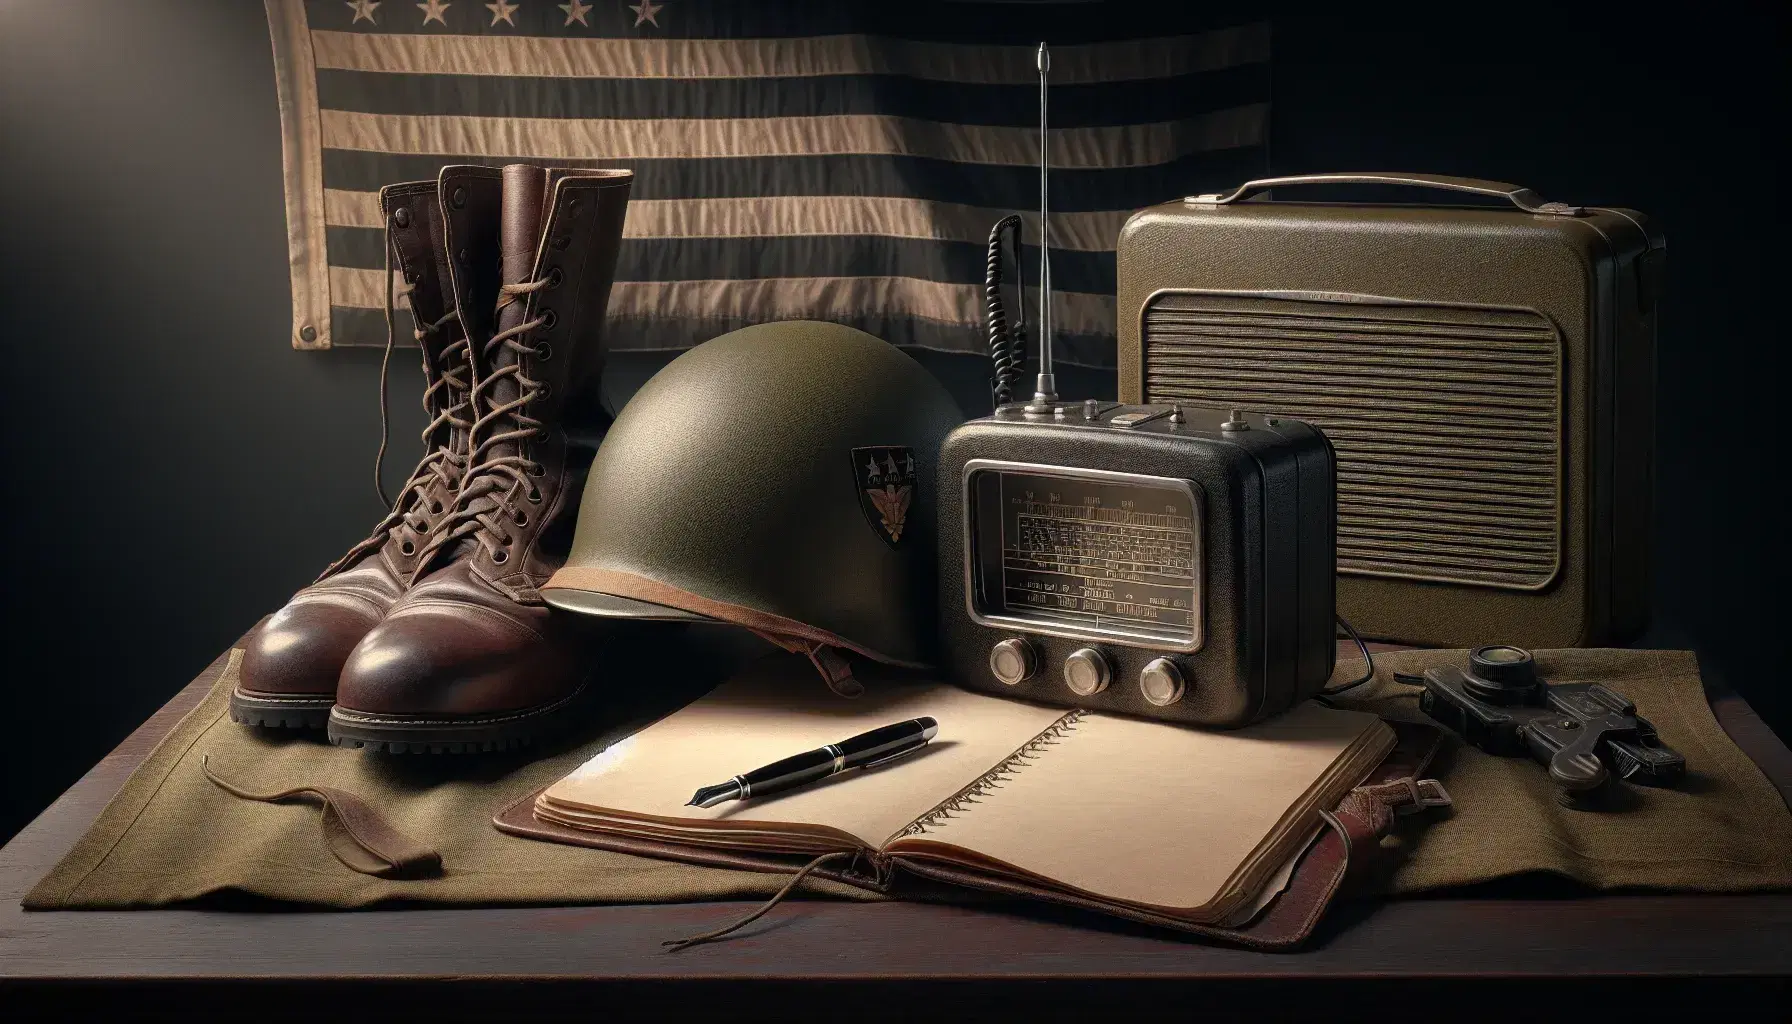 Casco militar de la Segunda Guerra Mundial en verde oliva, radio de campo, botas de cuero marrón y bandera a rayas junto a pluma y cuaderno en mesa de madera.